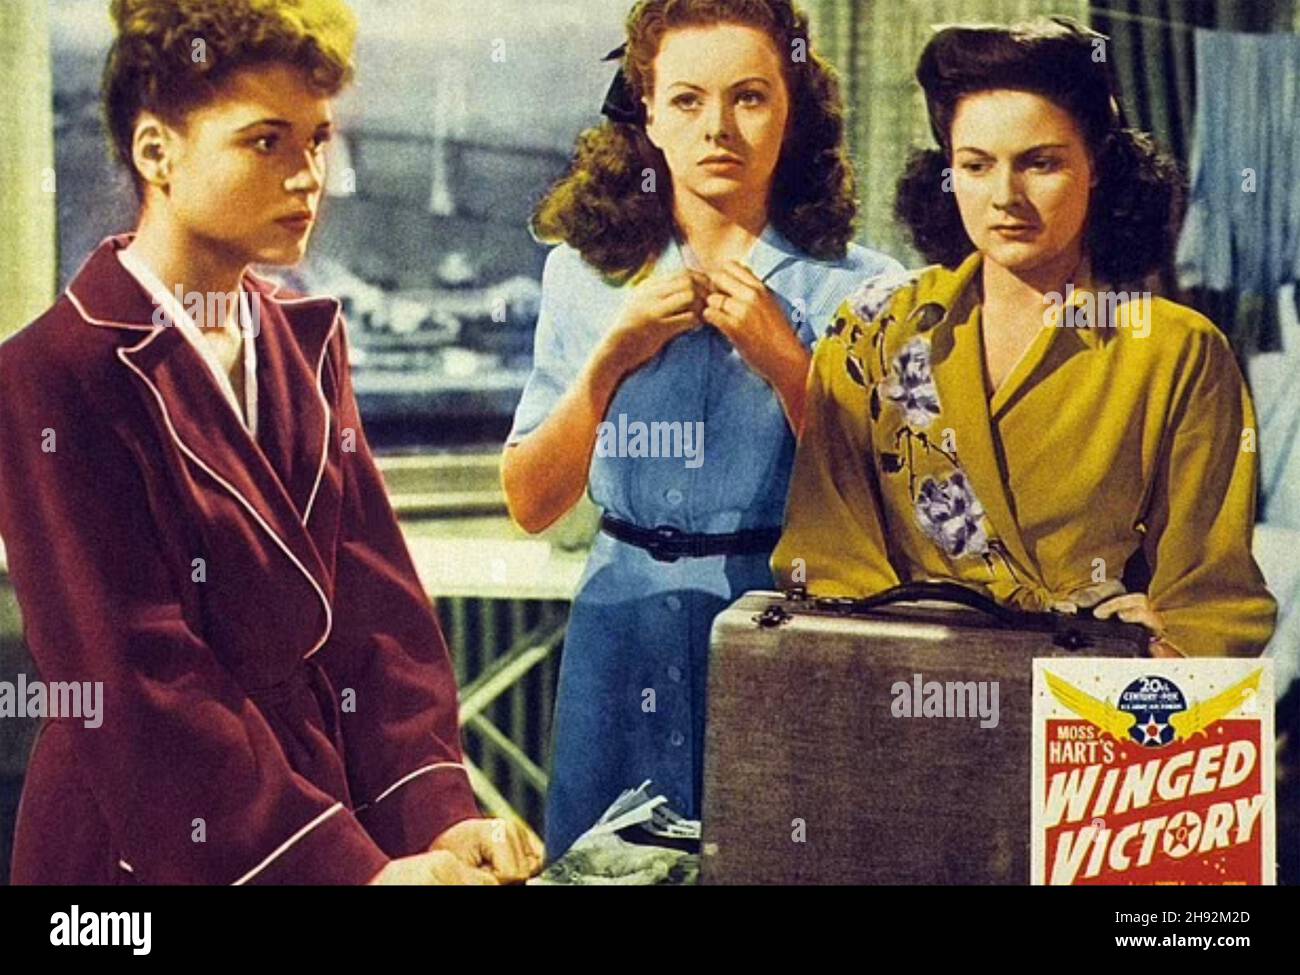 GEFLÜGELTER SIEG 1944 20th Century Fox Film mit von links: Judy Holliday, Jeanne Crain, Jo-Carroll Dennison. Stockfoto